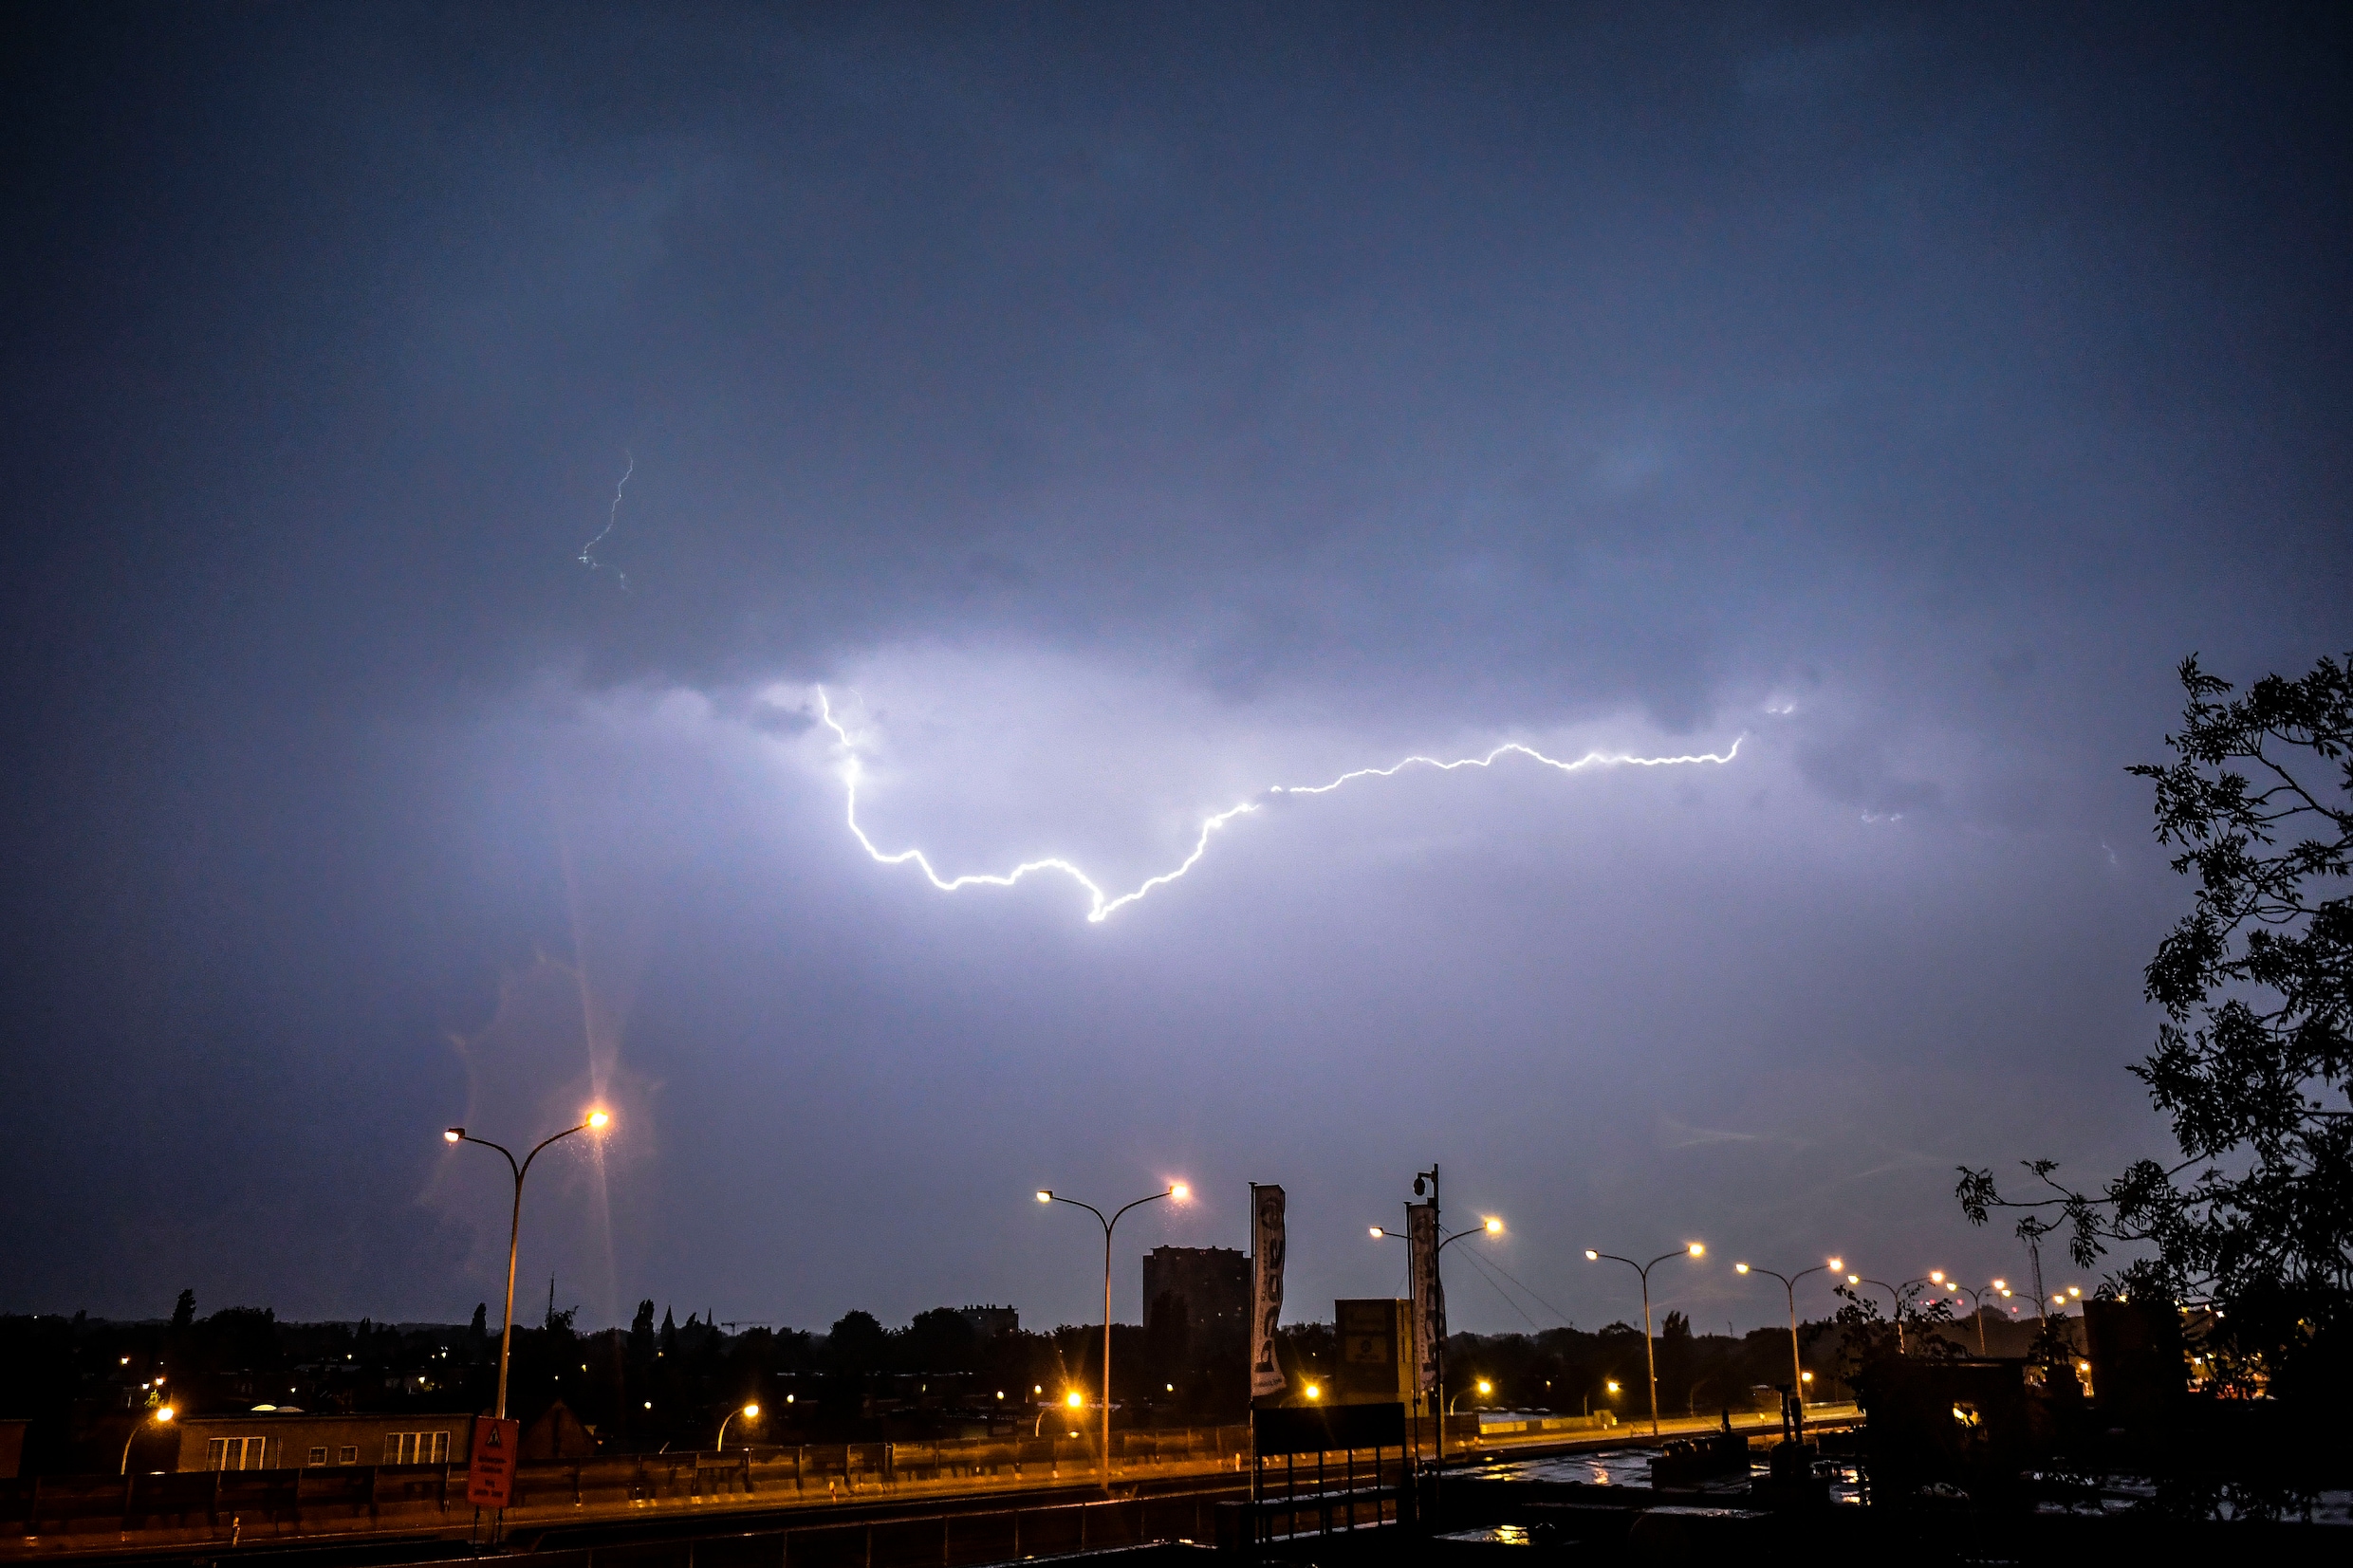 KMI waarschuwt met ‘code geel’ voor onweer in groot deel van het land